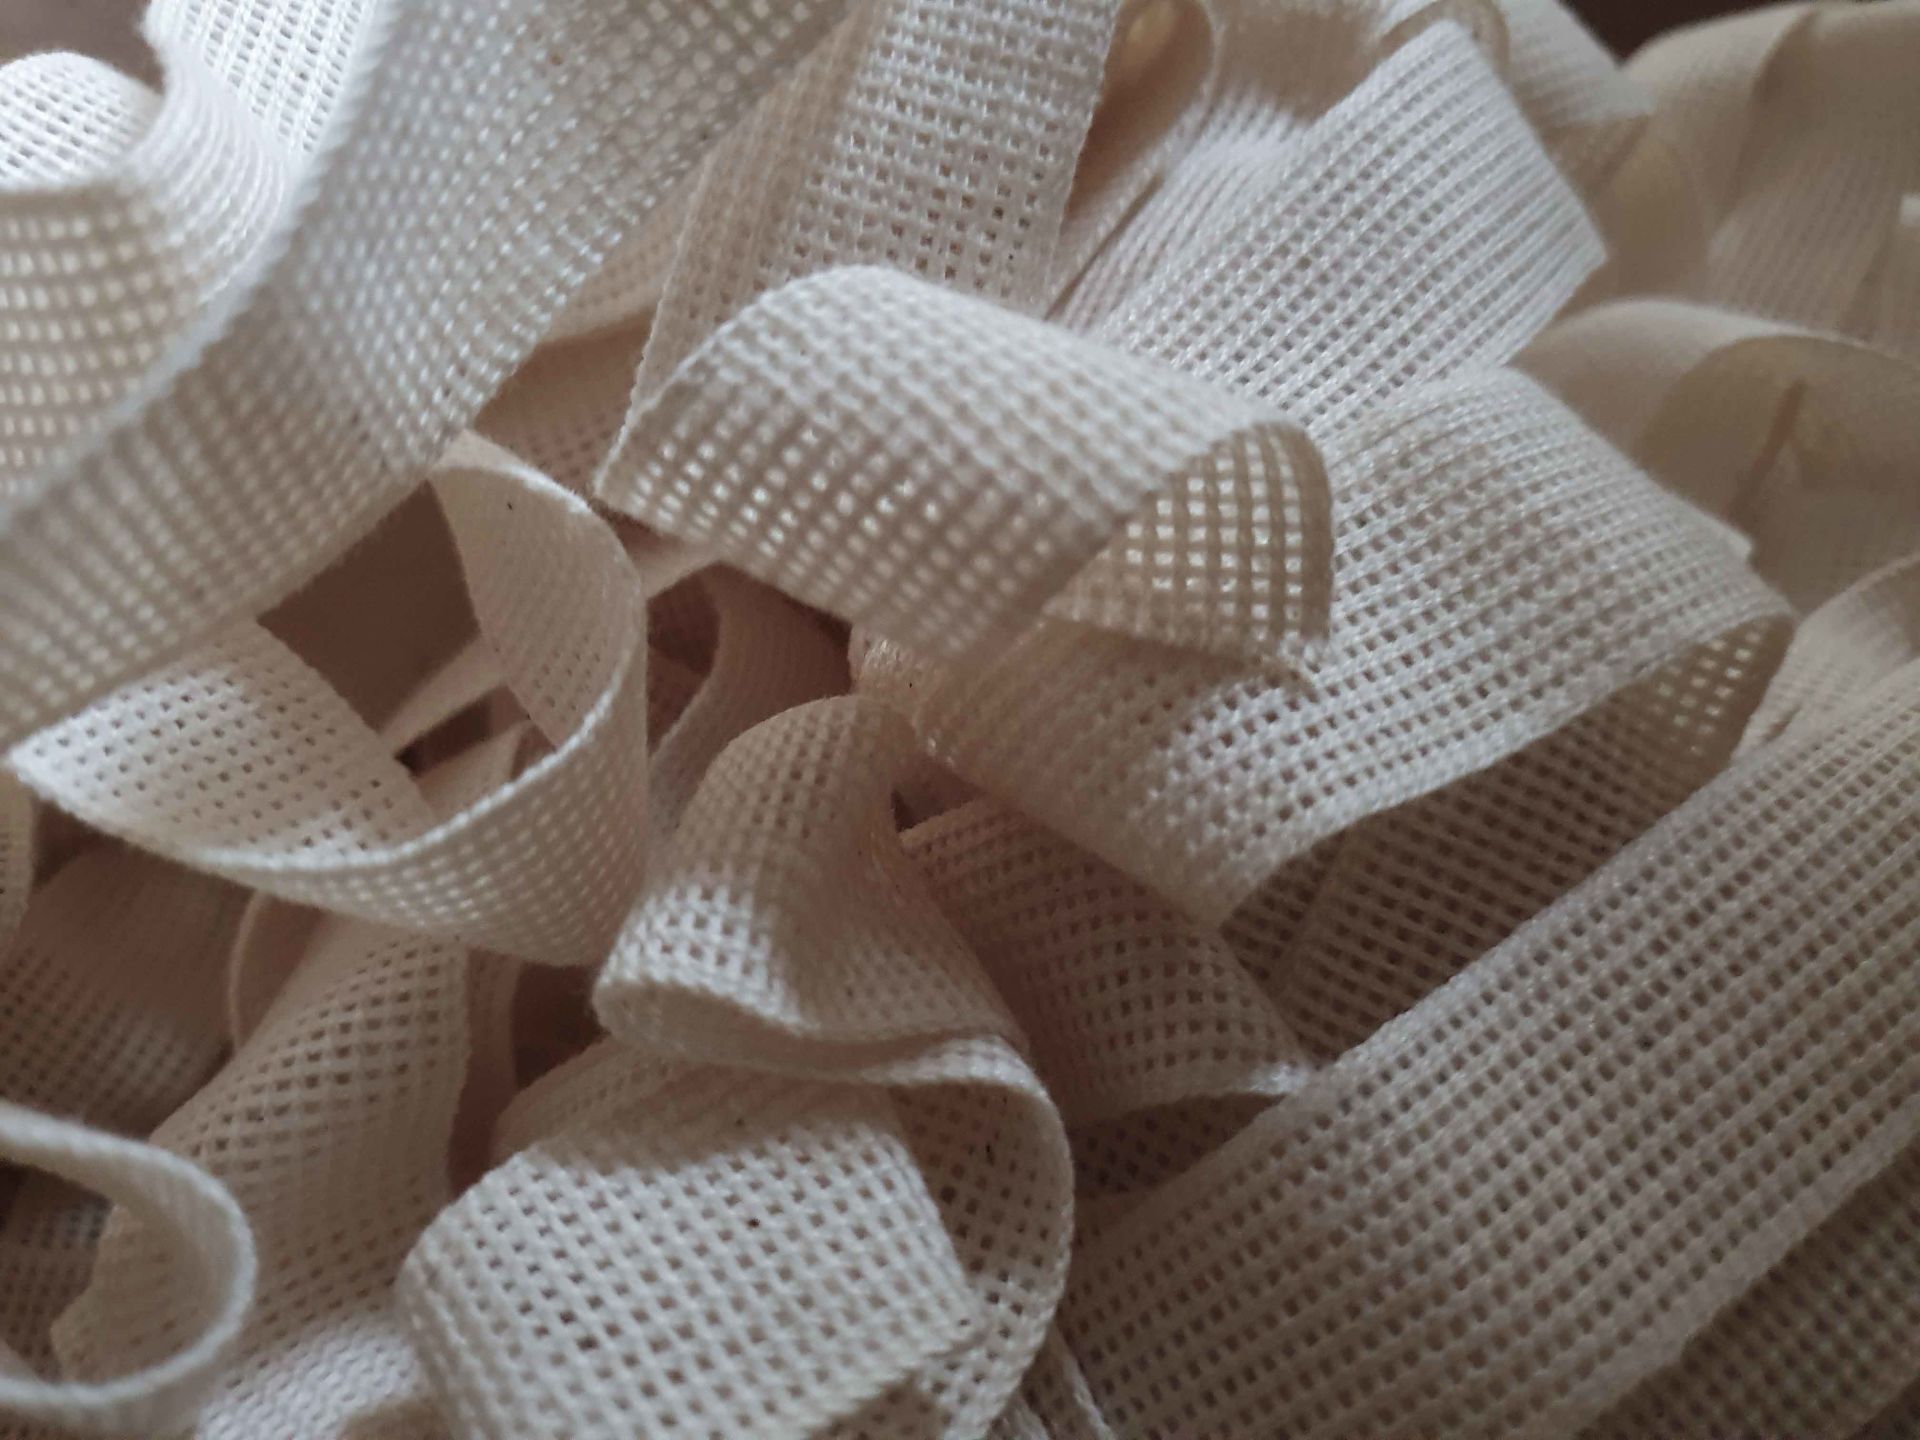 Baumwollband | Bindeband | 20 mm | 50 Meter | rohweiß-natur | Zum Verpacken und Dekorieren